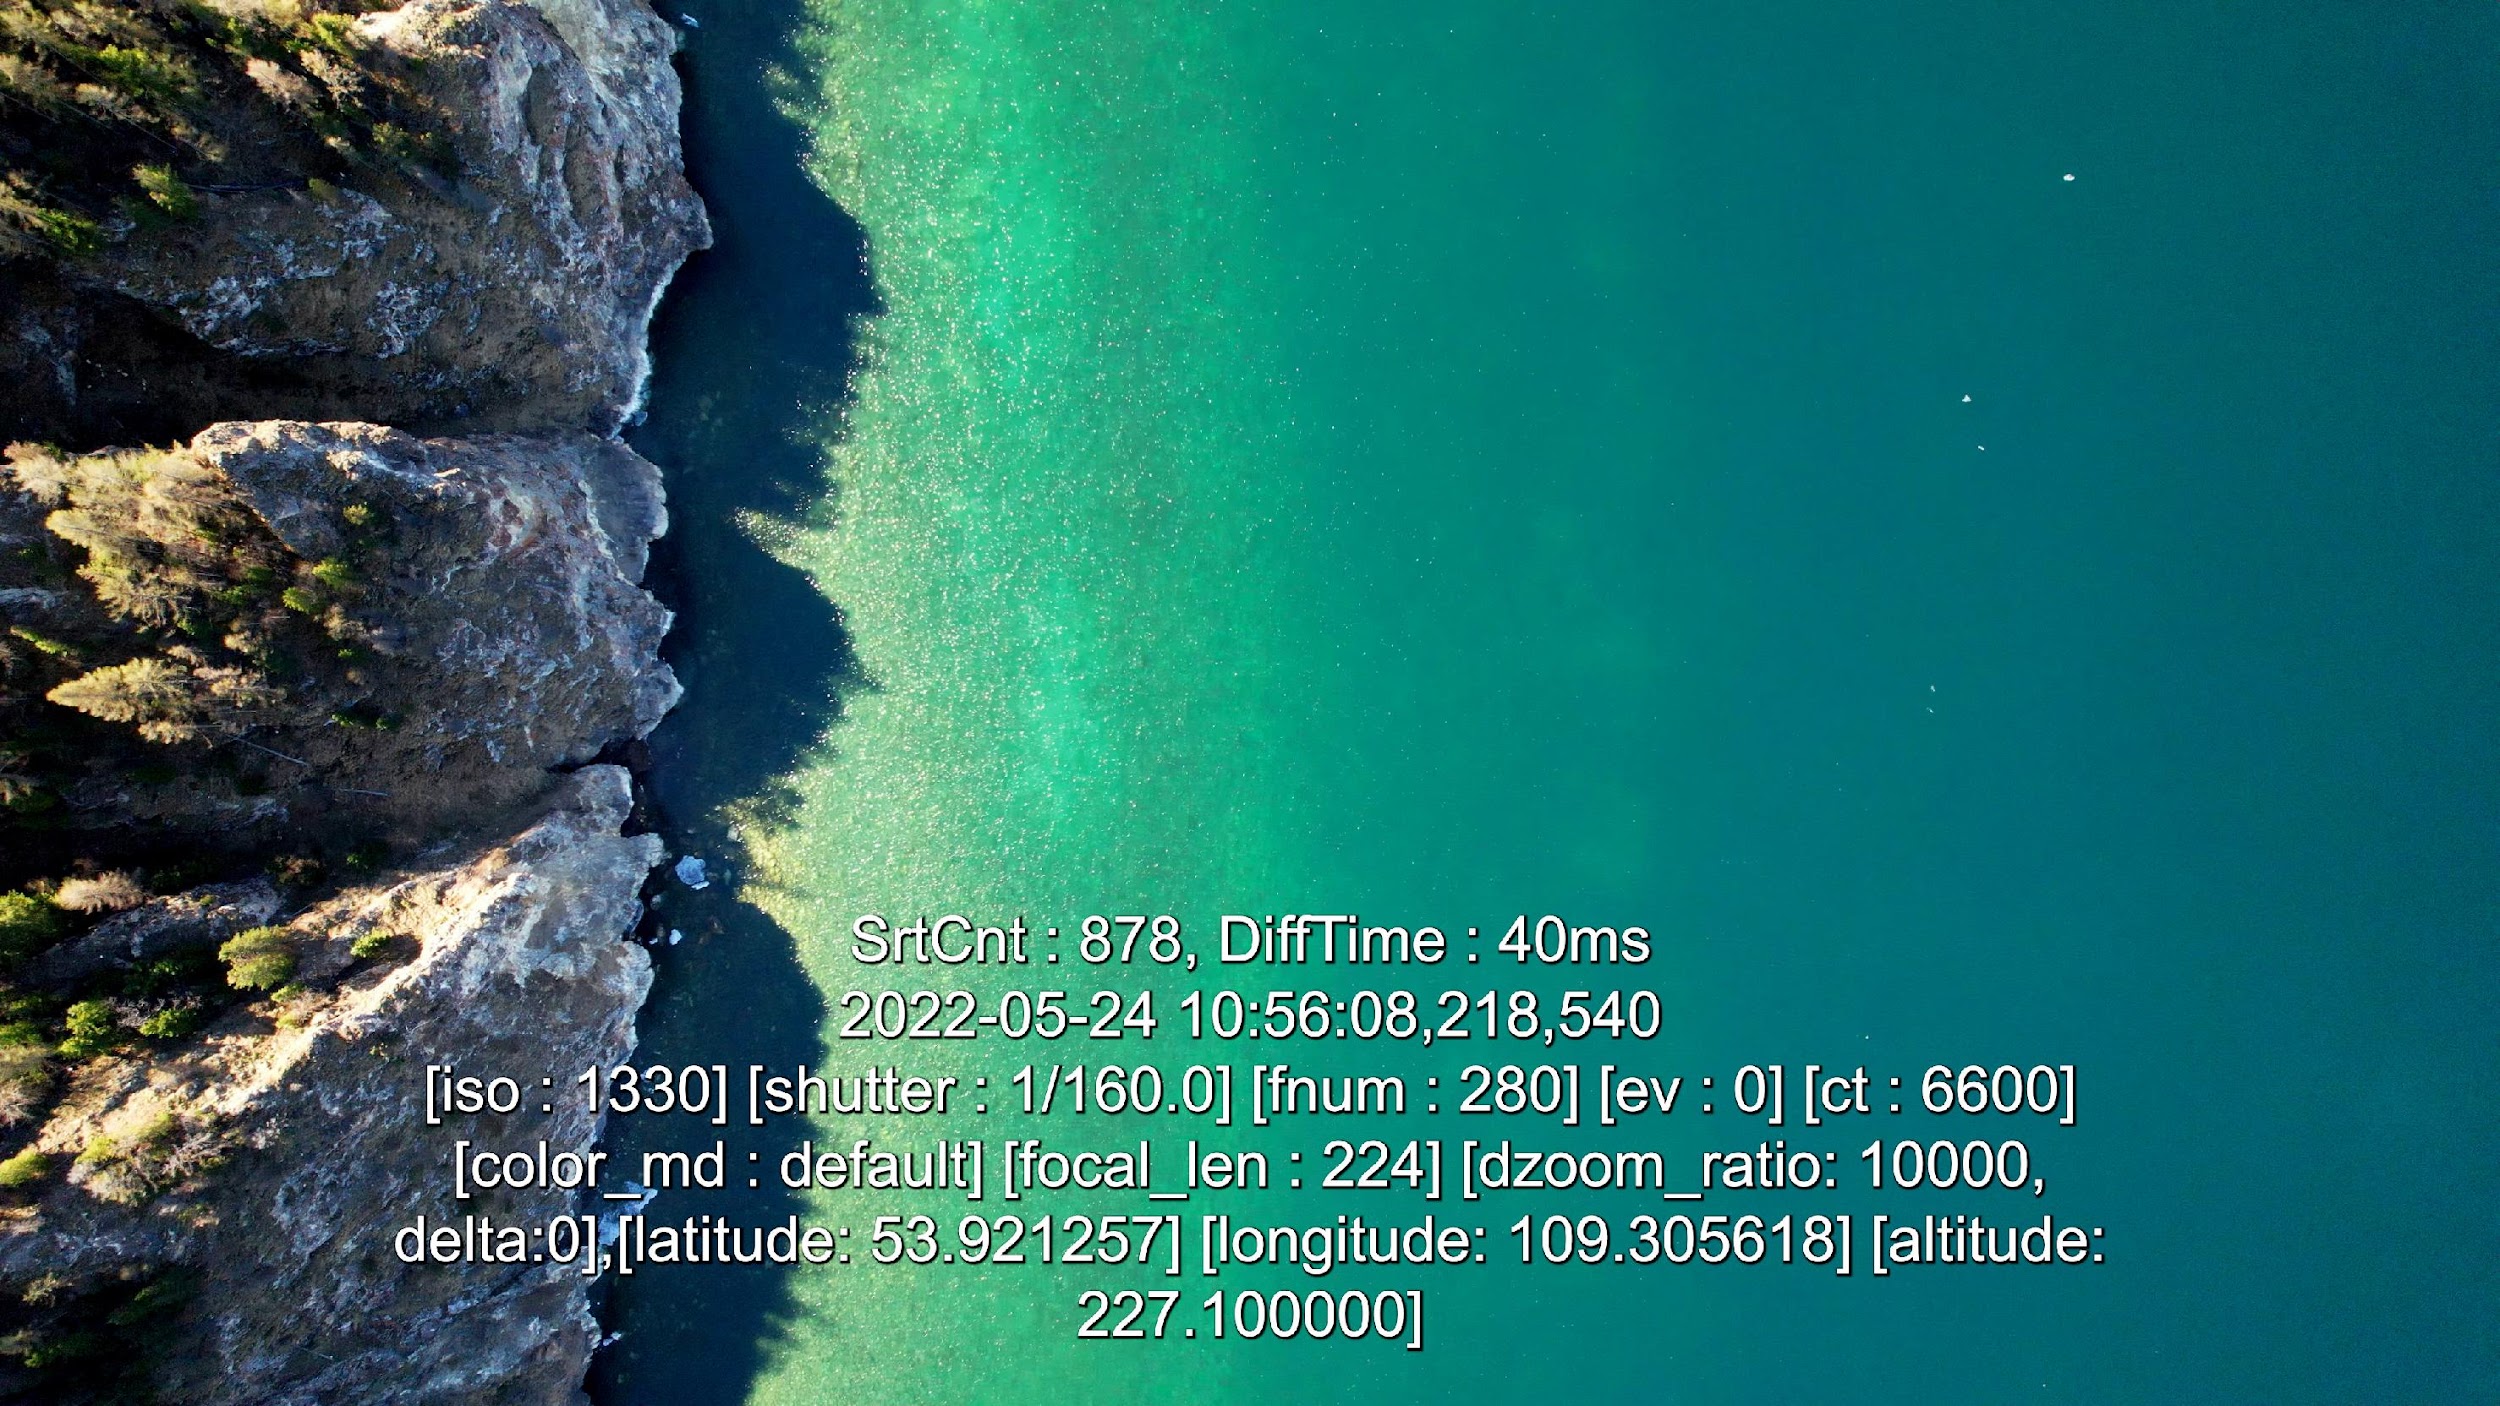 Пример аэросъемки береговой линии под крутым берегом (не используемый нерпой) с БПЛА с высоты >200 м 